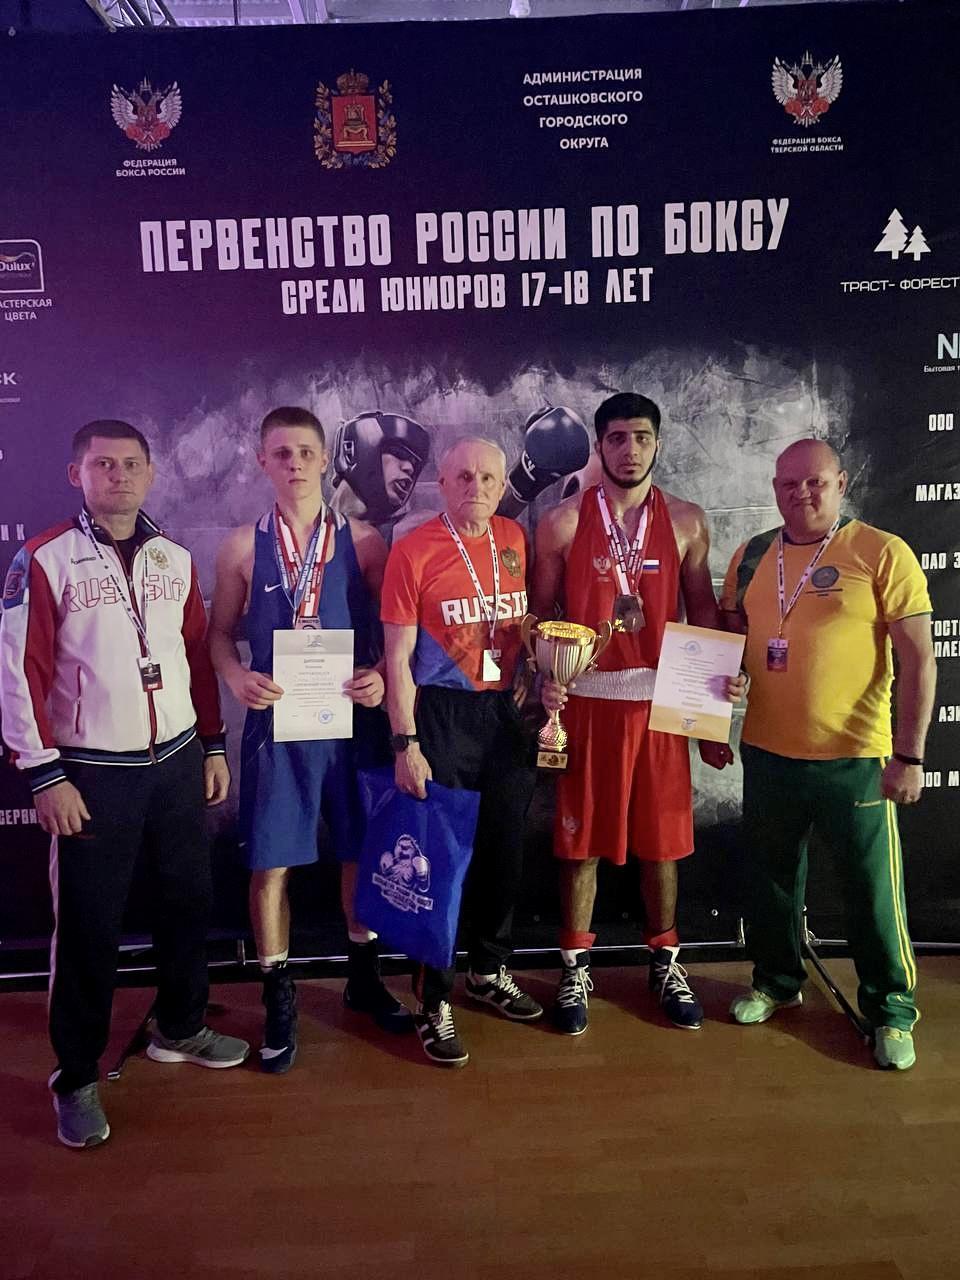 Поздравляем победителей и призеров Первенства России по боксу среди юниоров (17-18 лет)